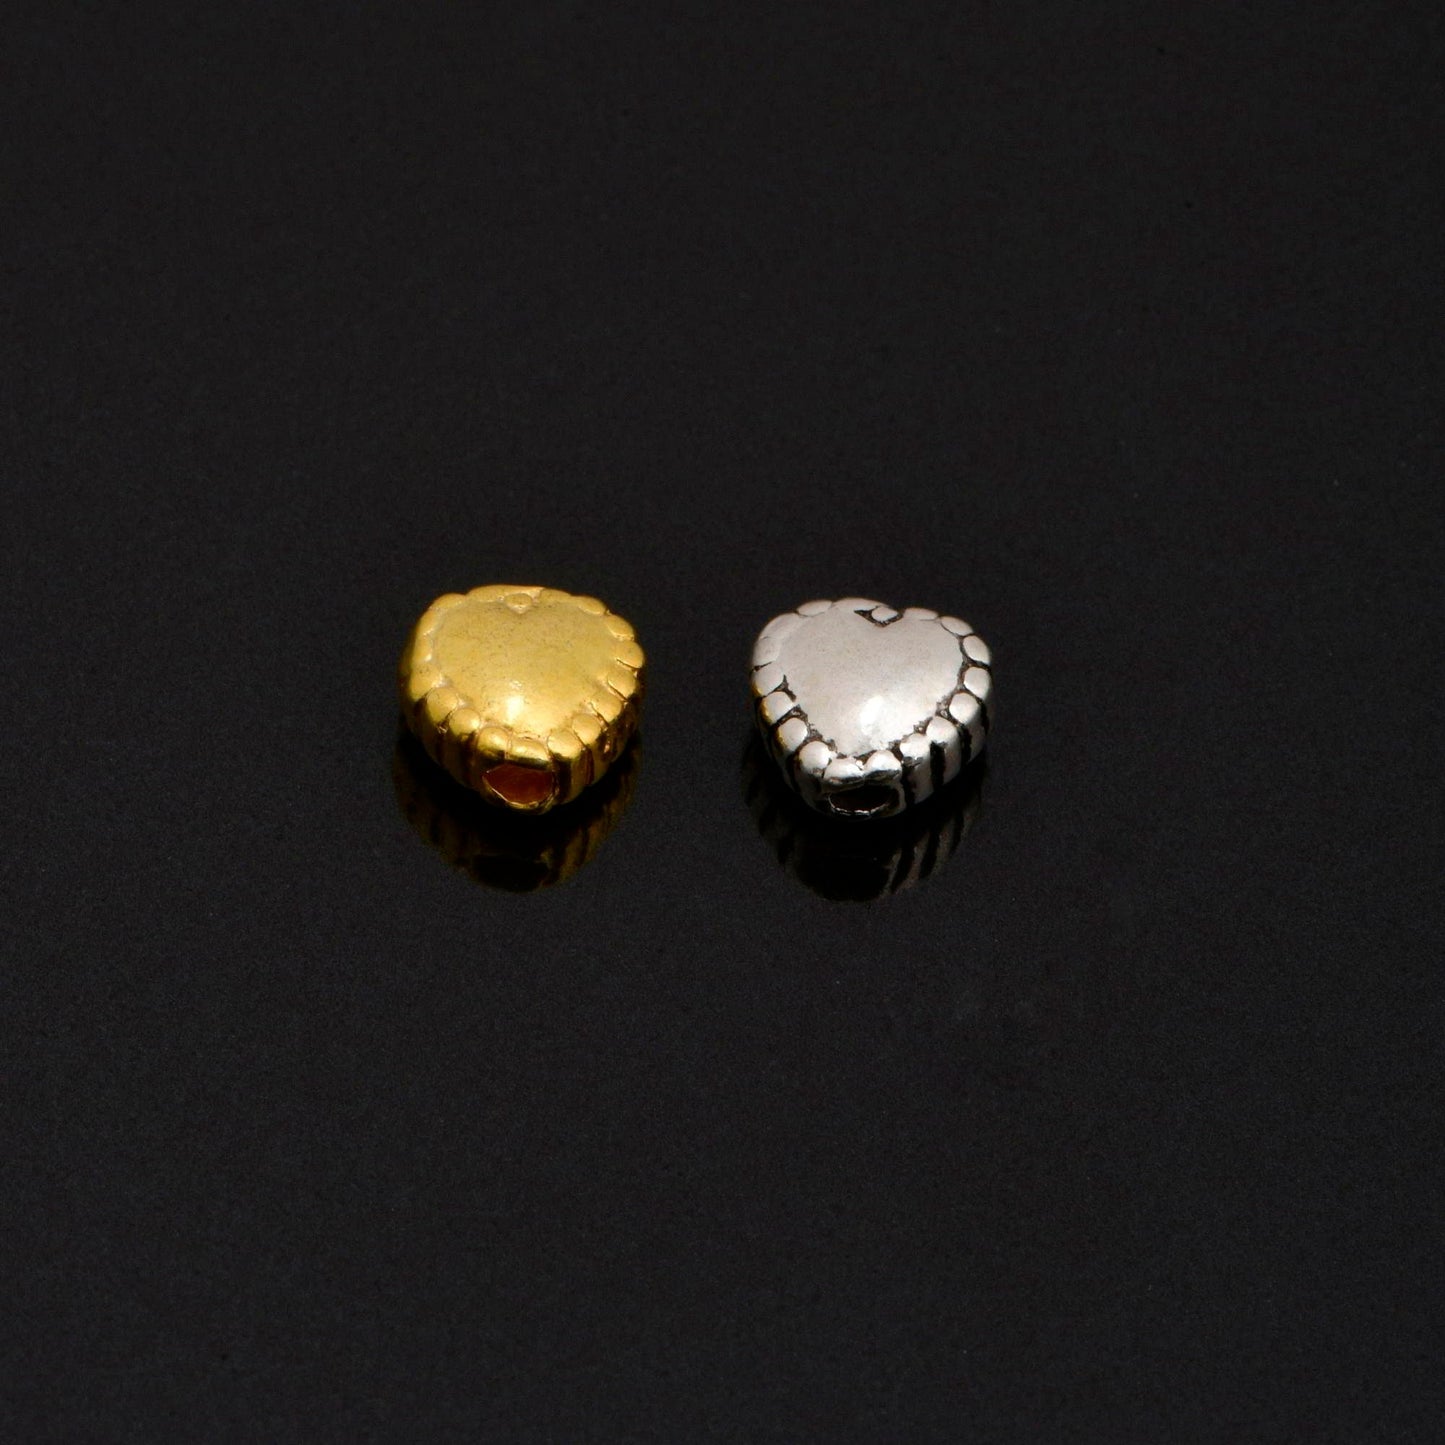 24K Gold Vermeil Heart Spacer Beads, Handmade Silver Spacer Beads in 24K Gold, 925 Silver Spacer Beads, Jewelry Supplies, M/VM99